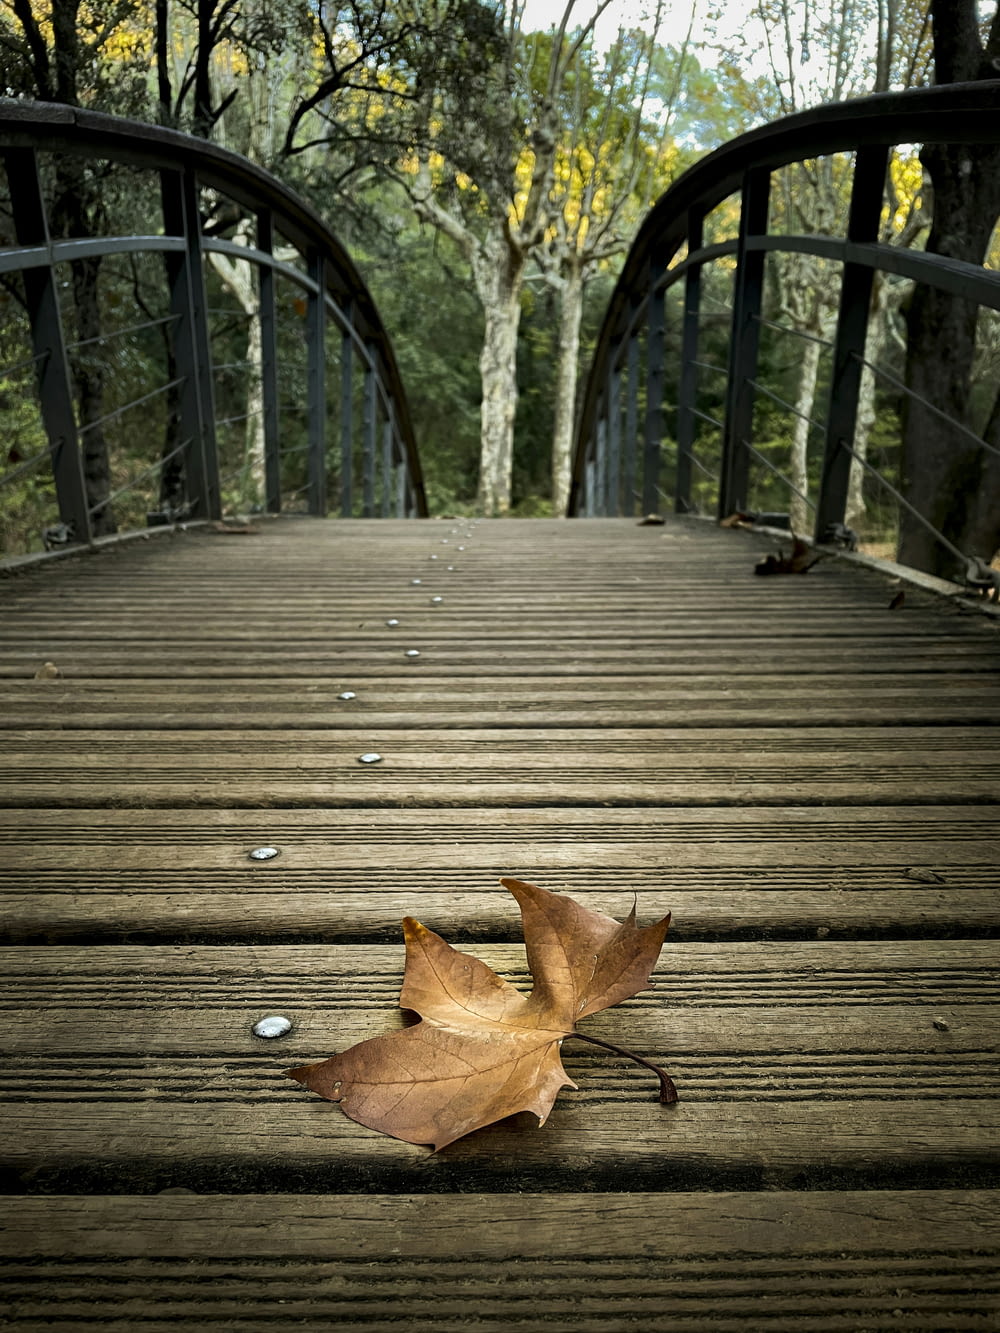 木の橋の上に落ち葉が落ちている